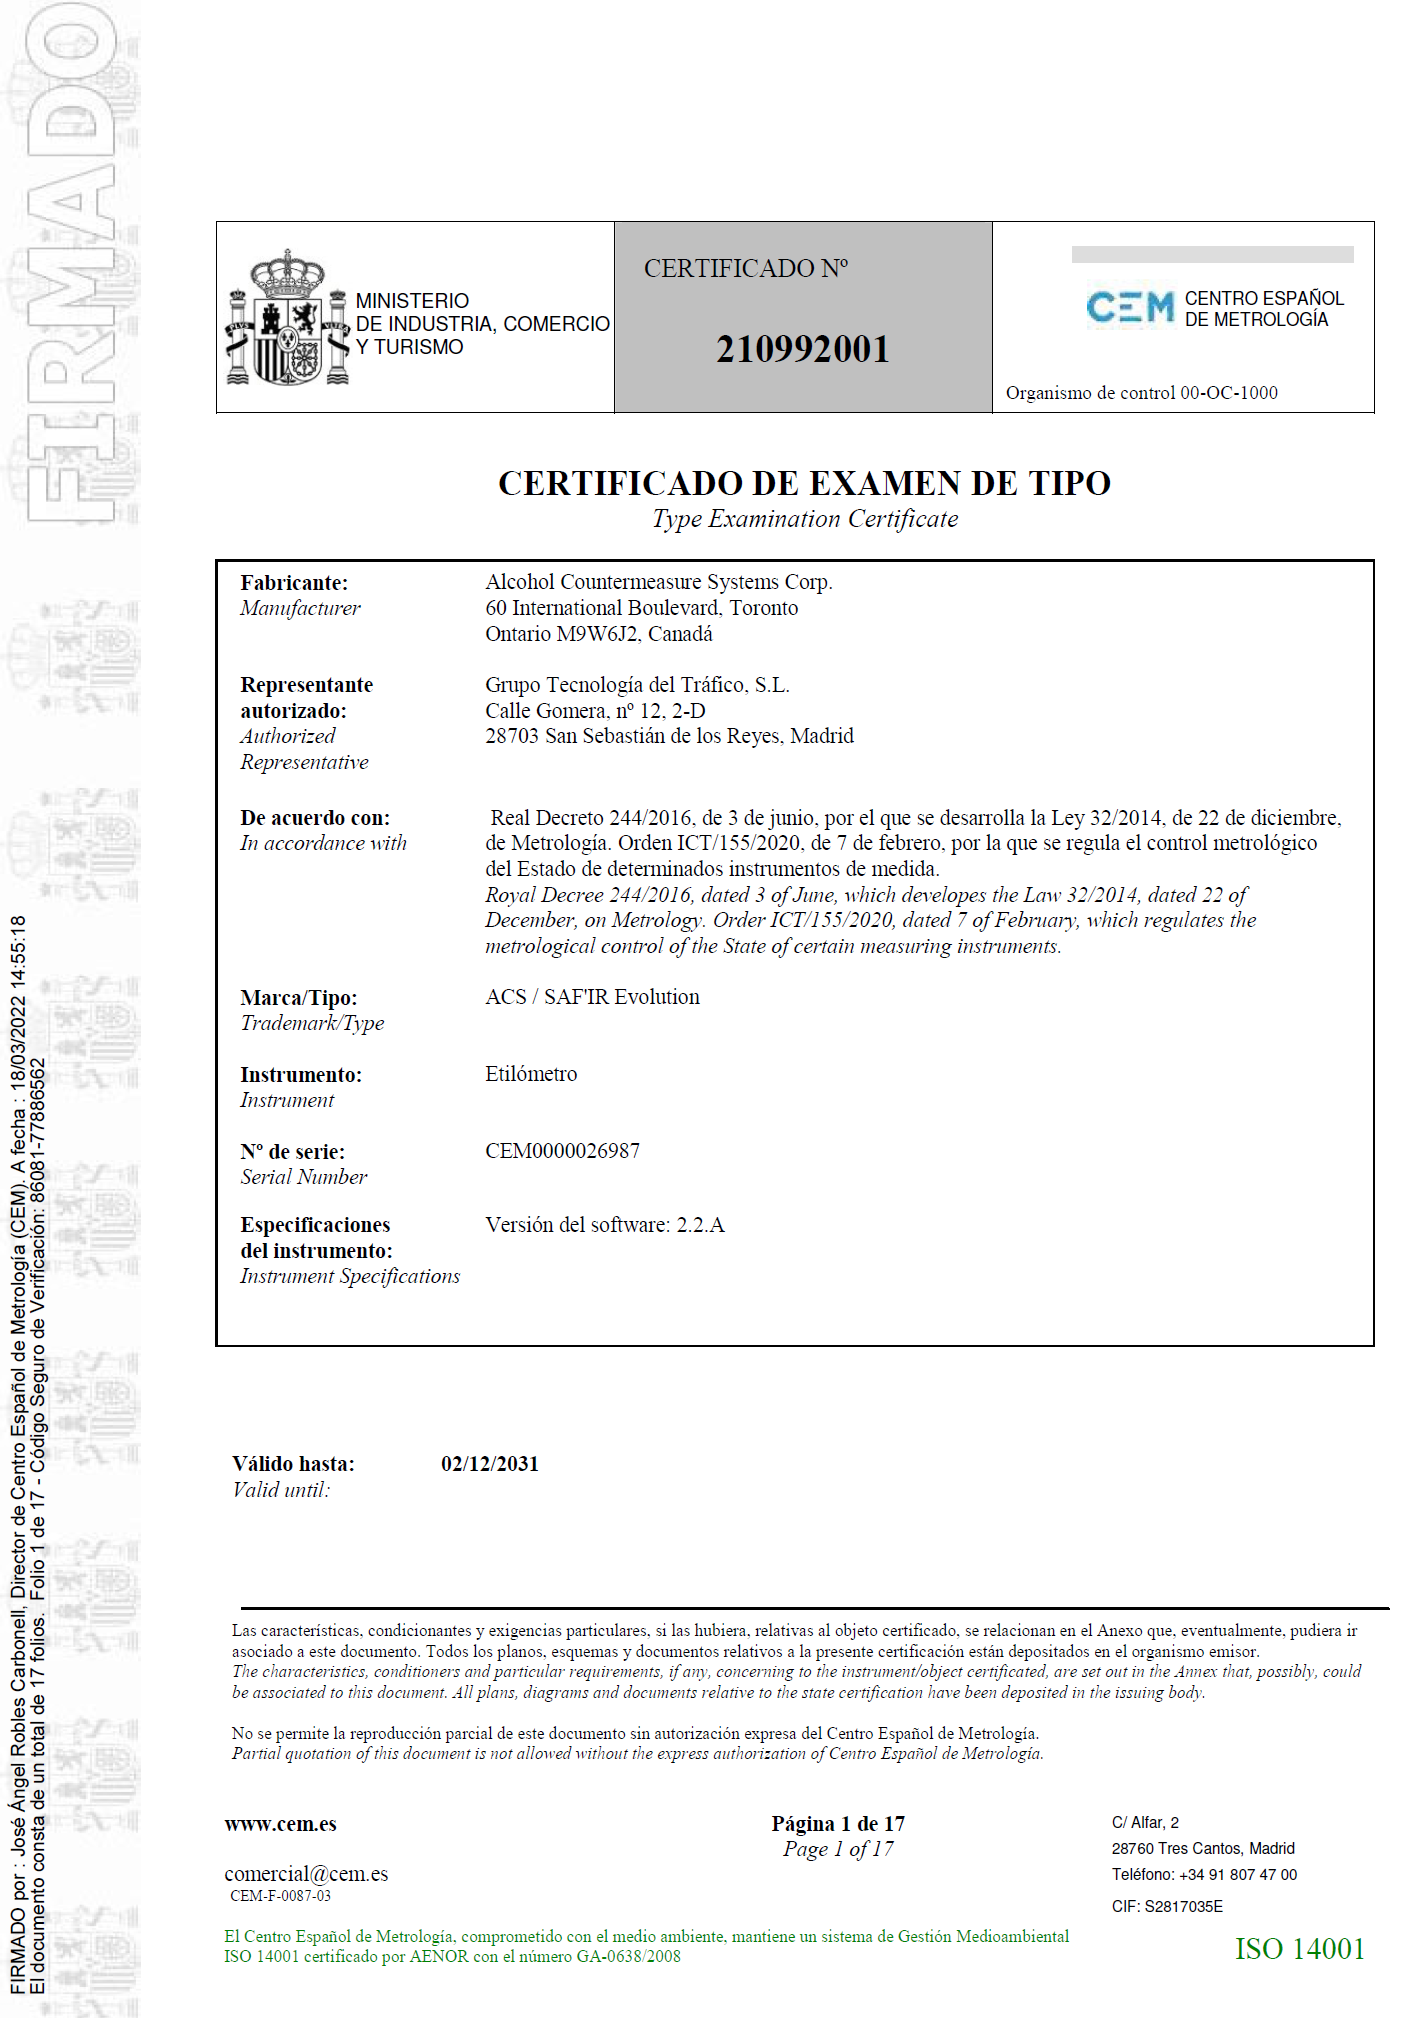 Certificado de examen de tipo nº 210992001